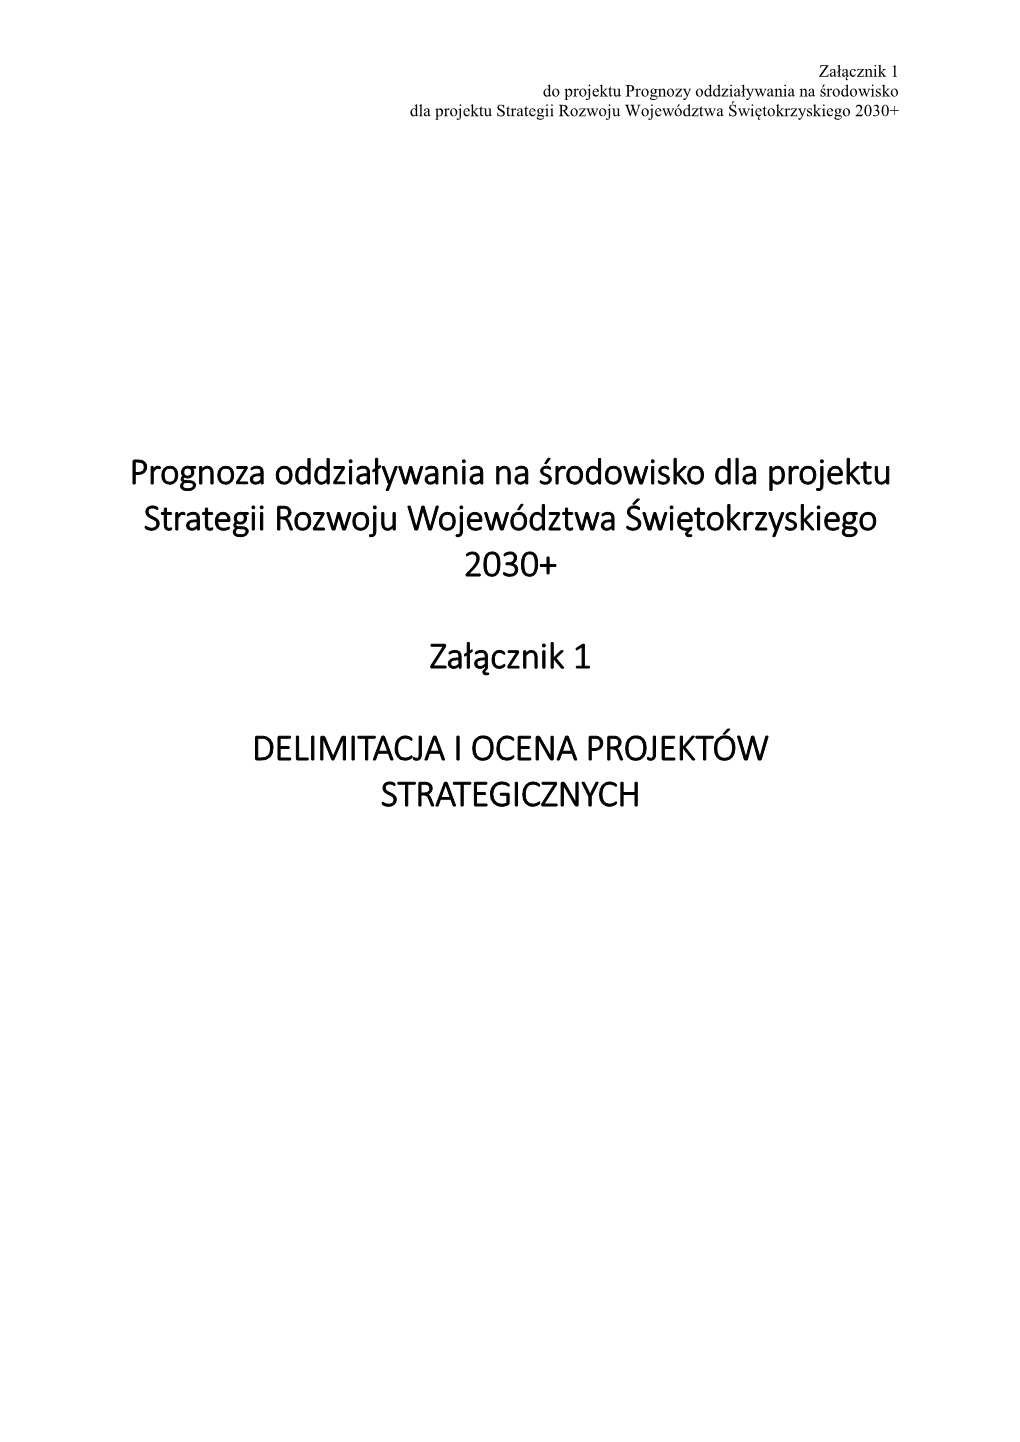 Prognoza Oddziaływania Na Środowisko Dla Projektu Strategii Rozwoju Województwa Świętokrzyskiego 2030+ Załącznik 1 DELIMI